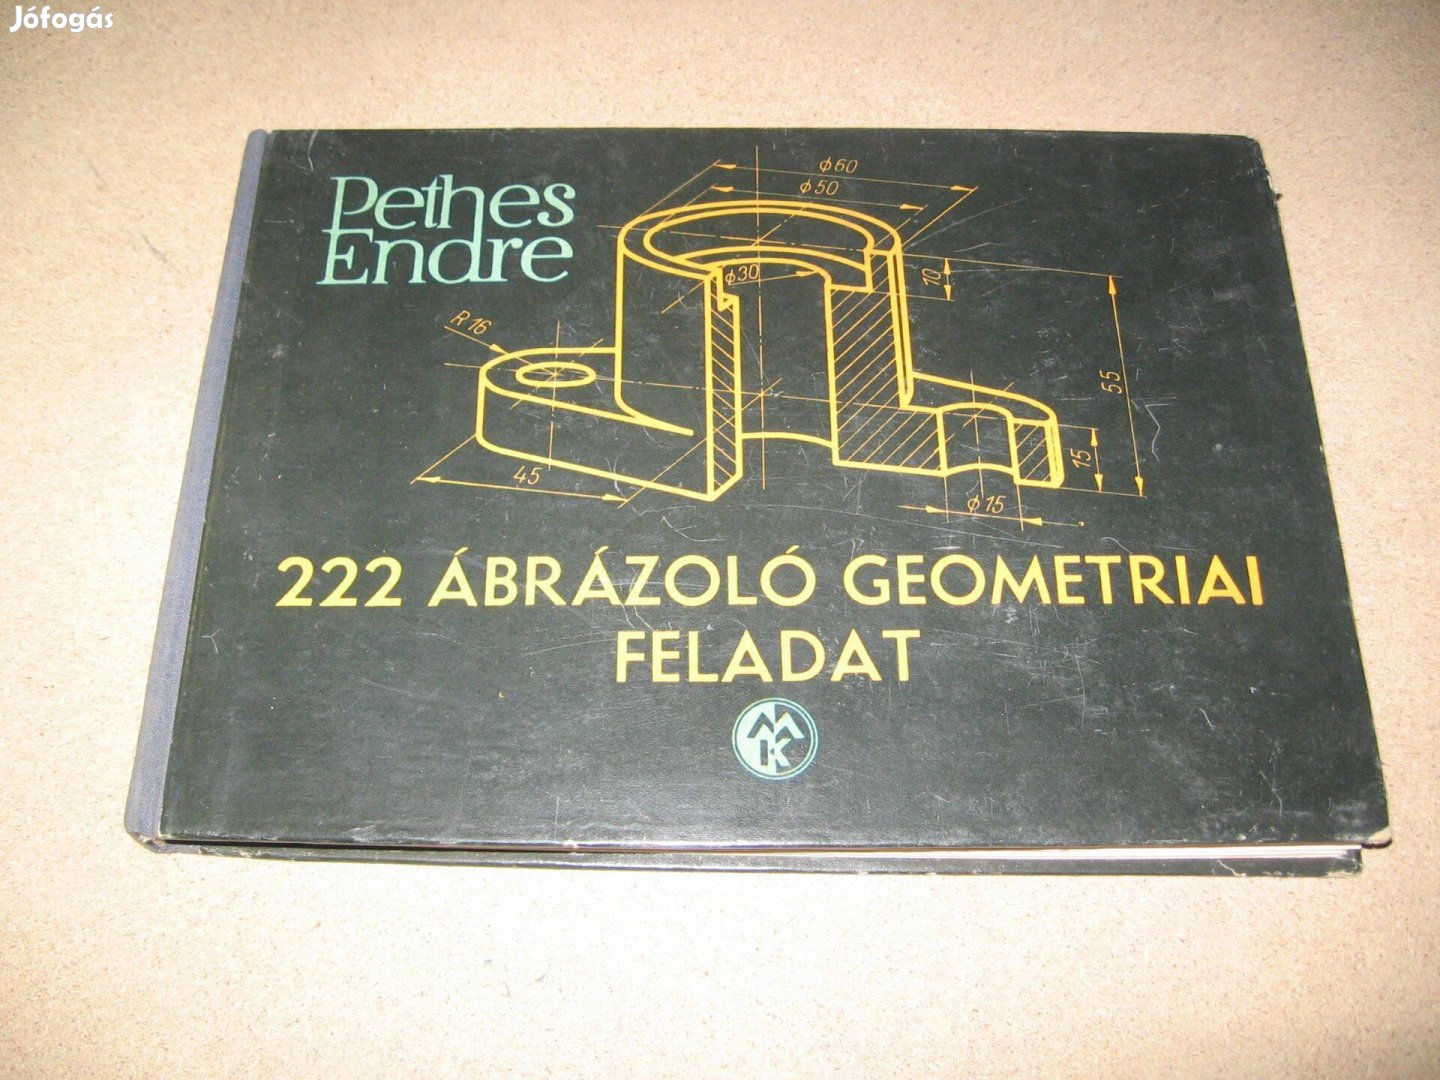 Pethes Endre: 222 Ábrázoló Geometriai feladat című könyve